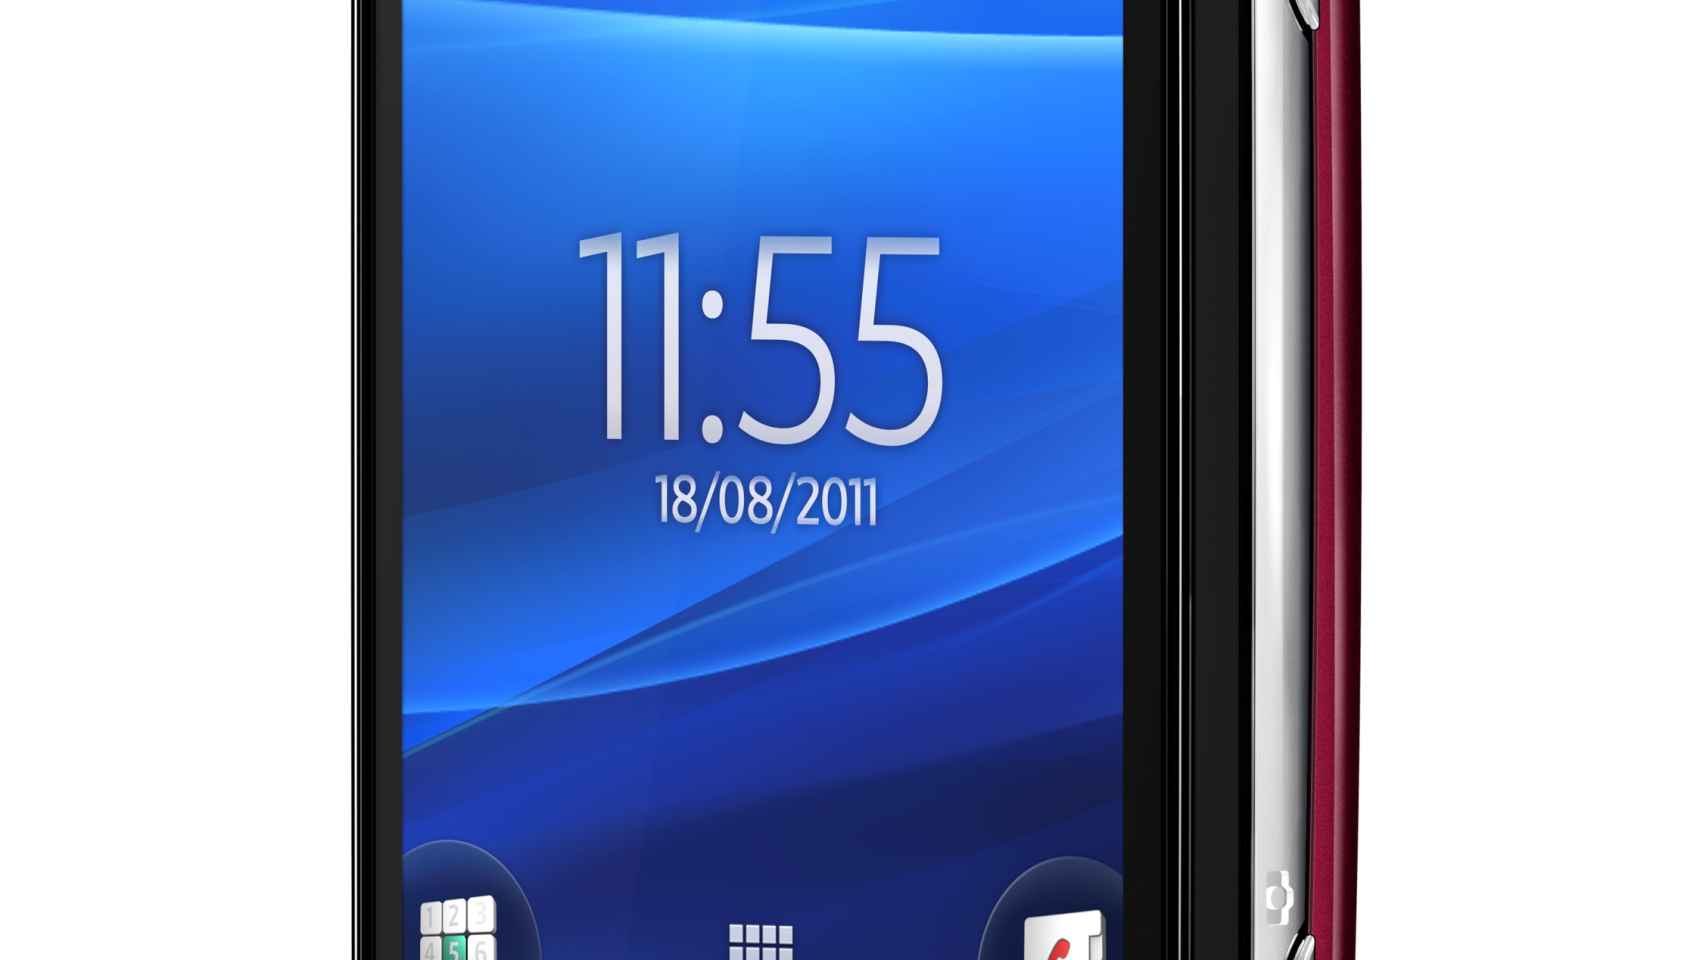 Lanzamiento de los nuevos Sony Ericsson Xperia Mini y Xperia Mini Pro